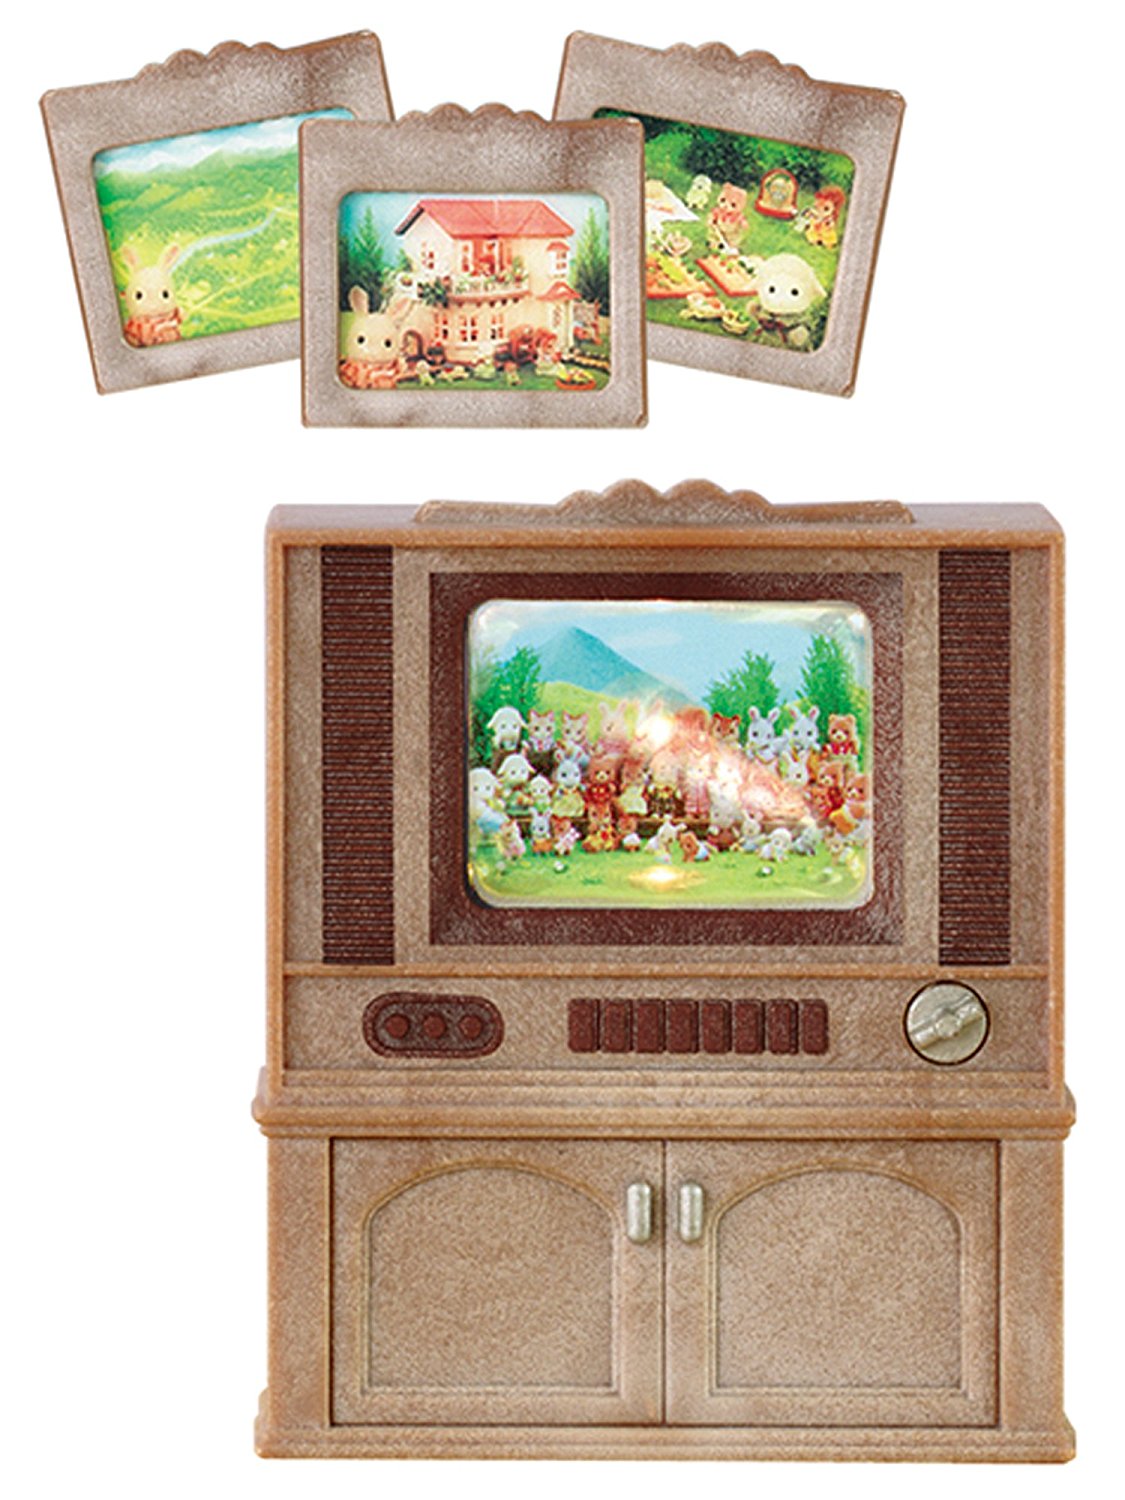 Sylvanian Families - Цветной телевизор  